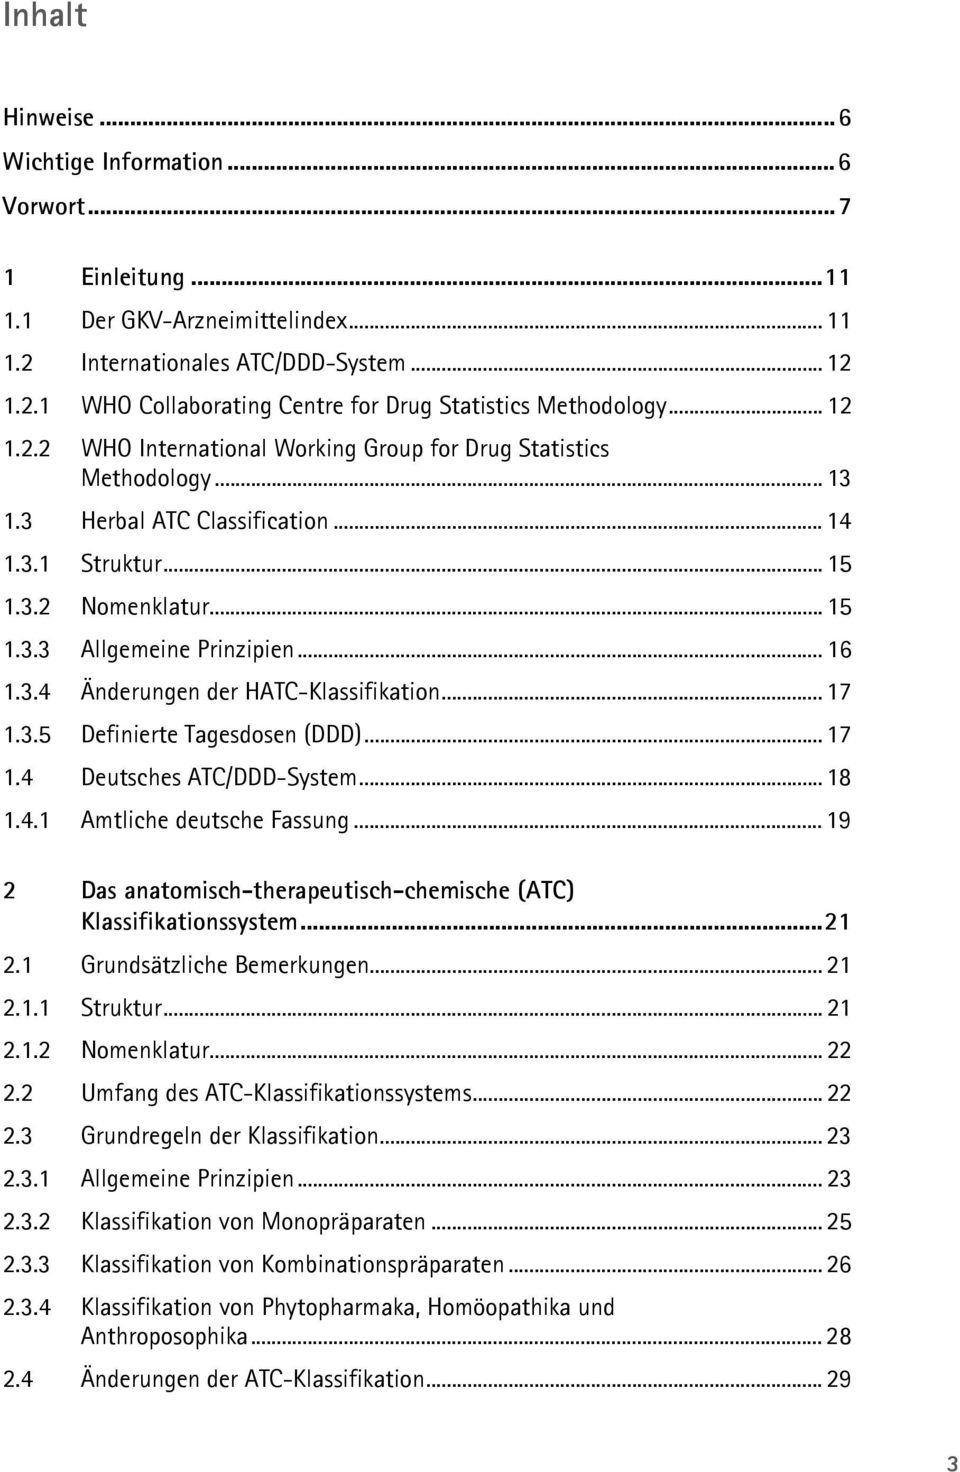 3.4 Änderungen der HATC-Klassifikation... 17 1.3.5 Definierte Tagesdosen (DDD)... 17 1.4 Deutsches ATC/DDD-System... 18 1.4.1 Amtliche deutsche Fassung.